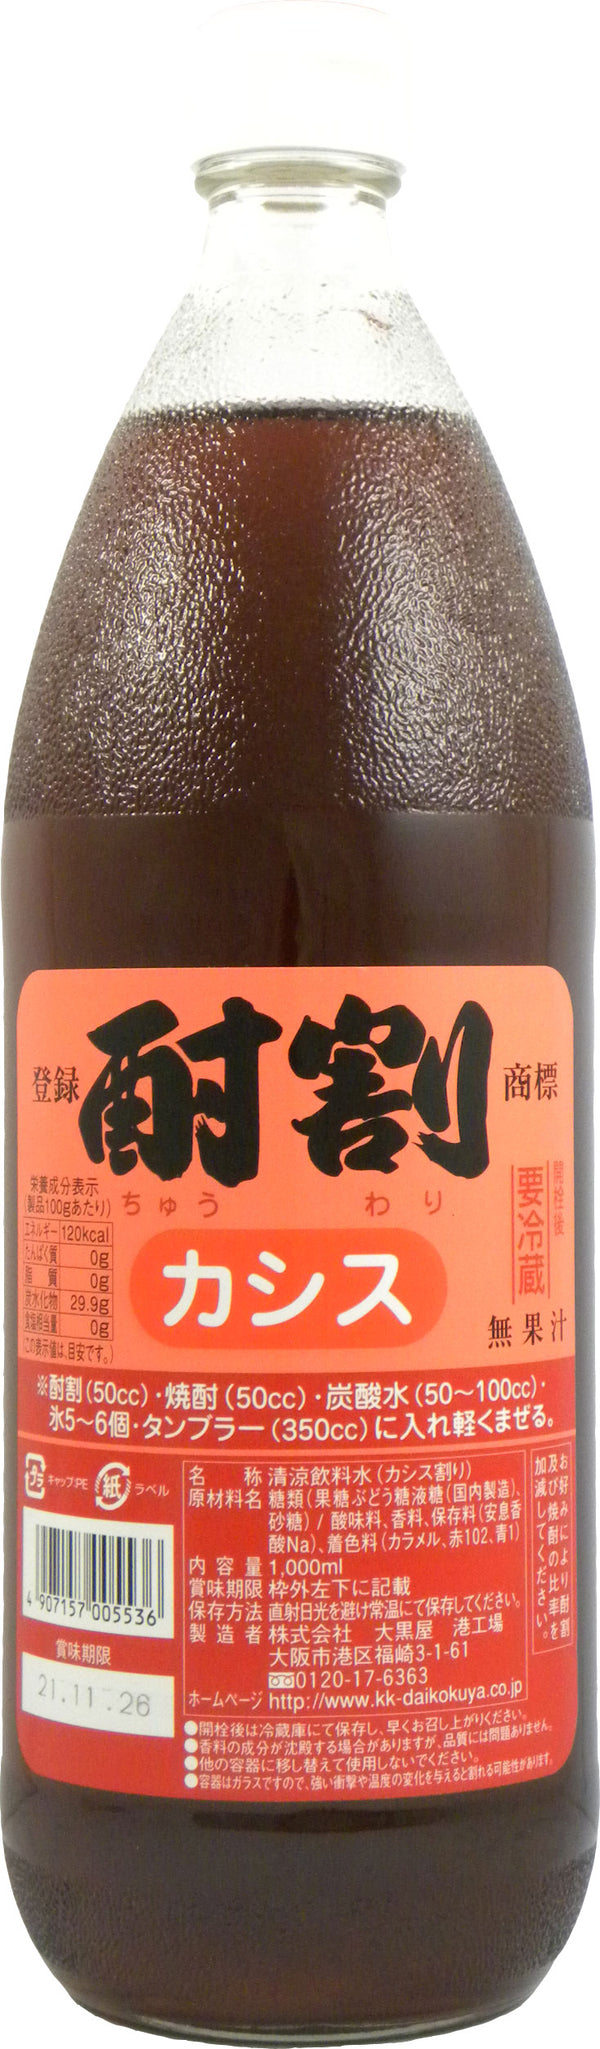 Daikokuya Chuwari Cassis 1L Bottle Syrup Commercial Use